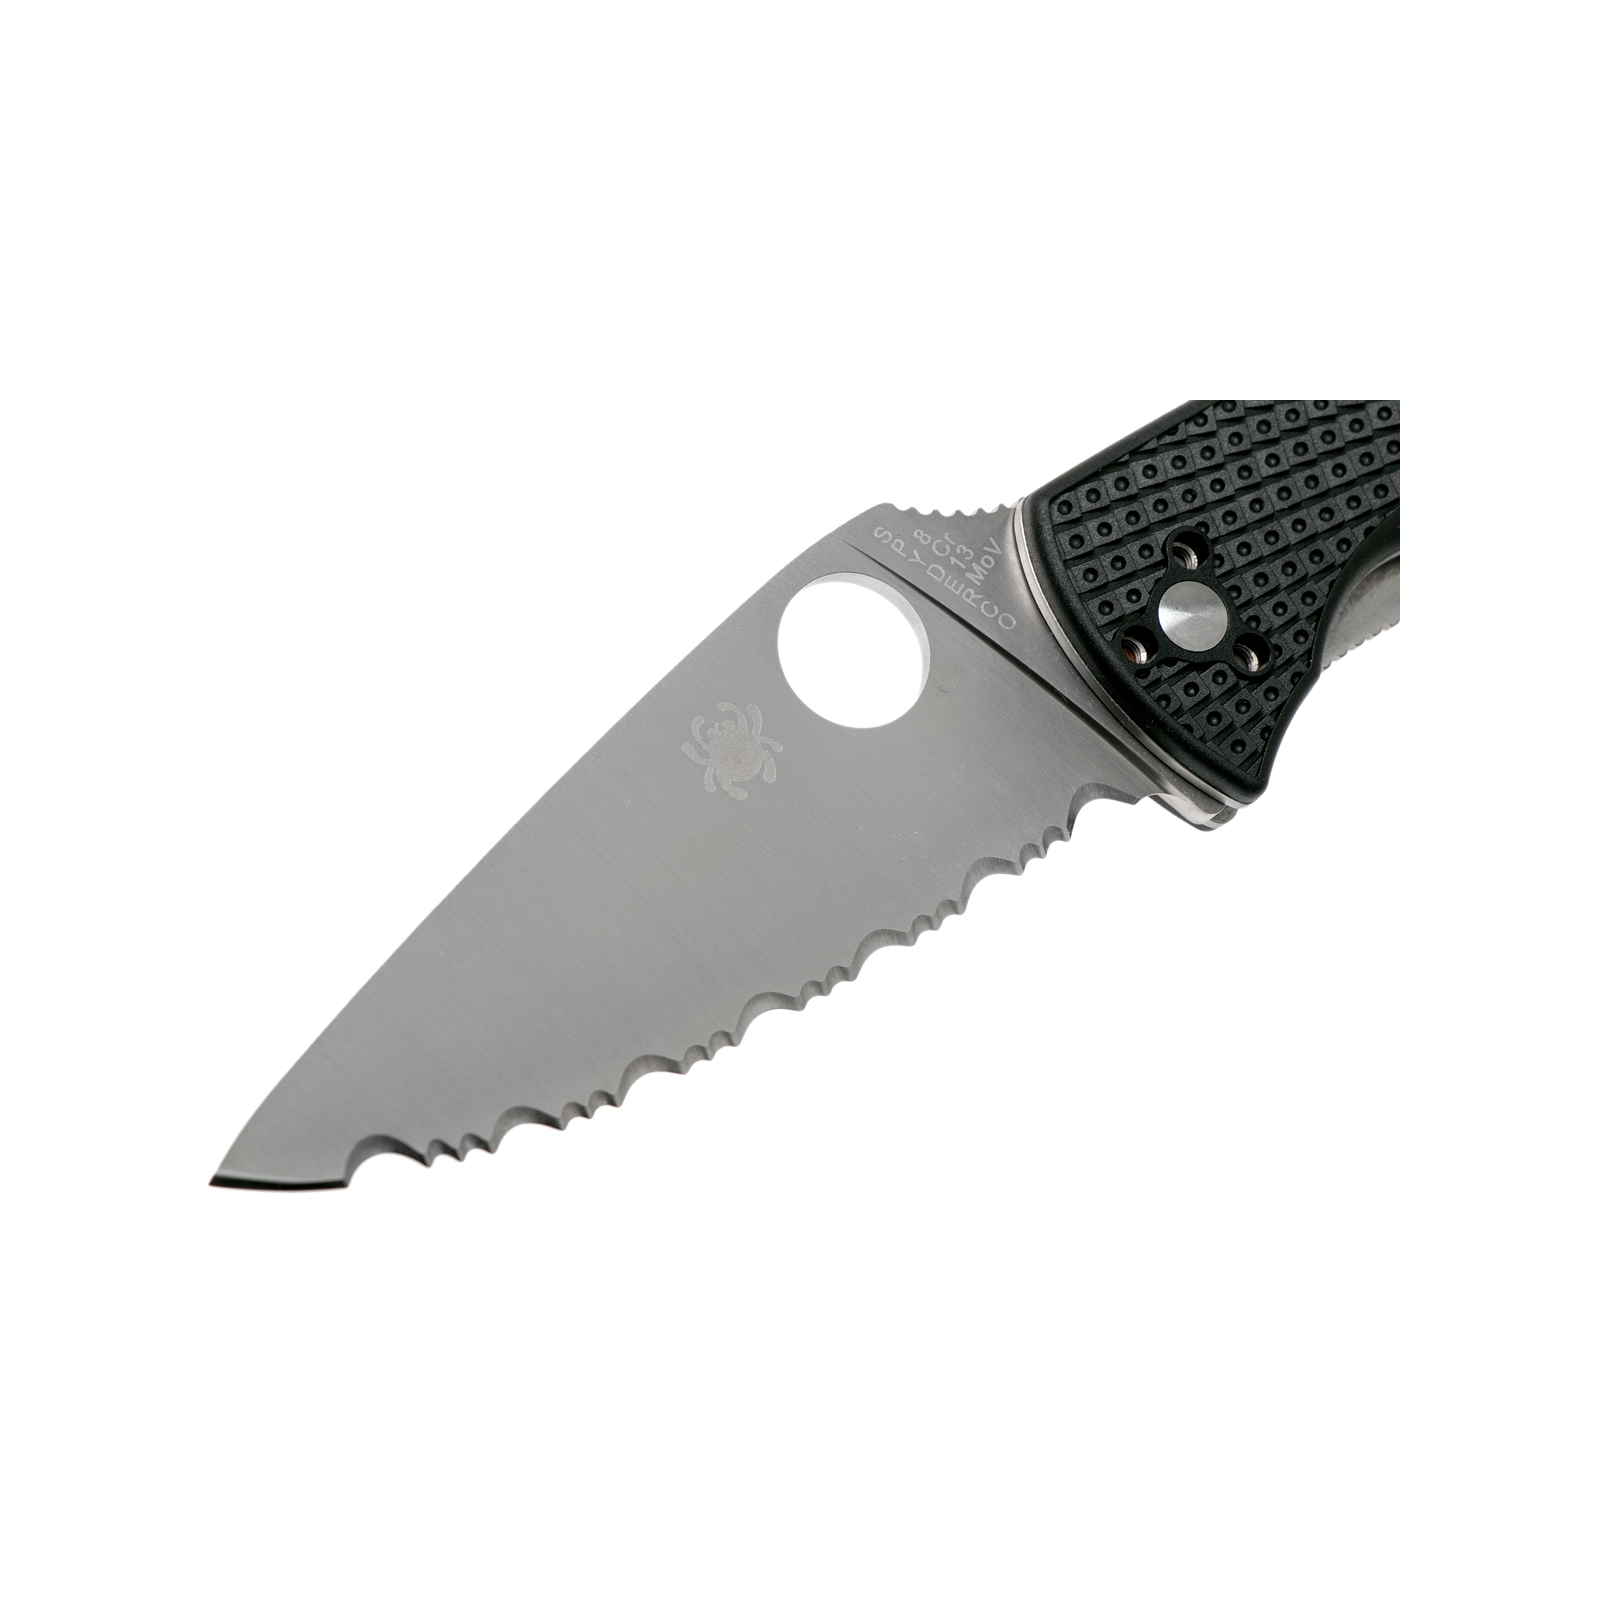 Нож Spyderco Tenacious Black Blade FRN серрейтор (C122SBBK) изображение 3